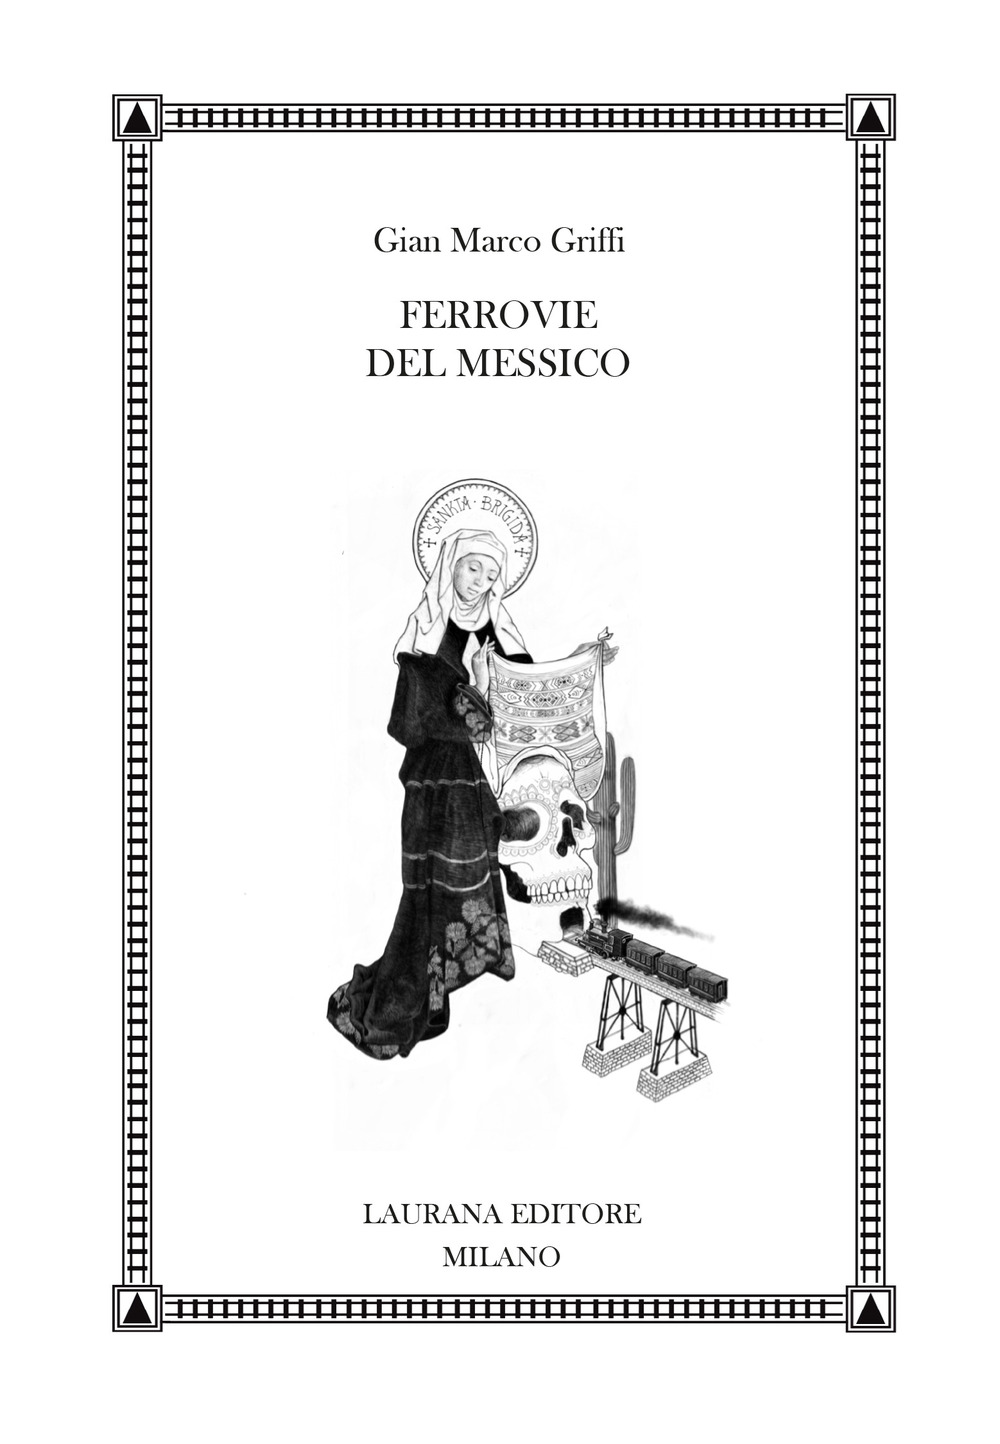 Ferrovie del Messico - Gian Marco Griffi - Laurana Editore